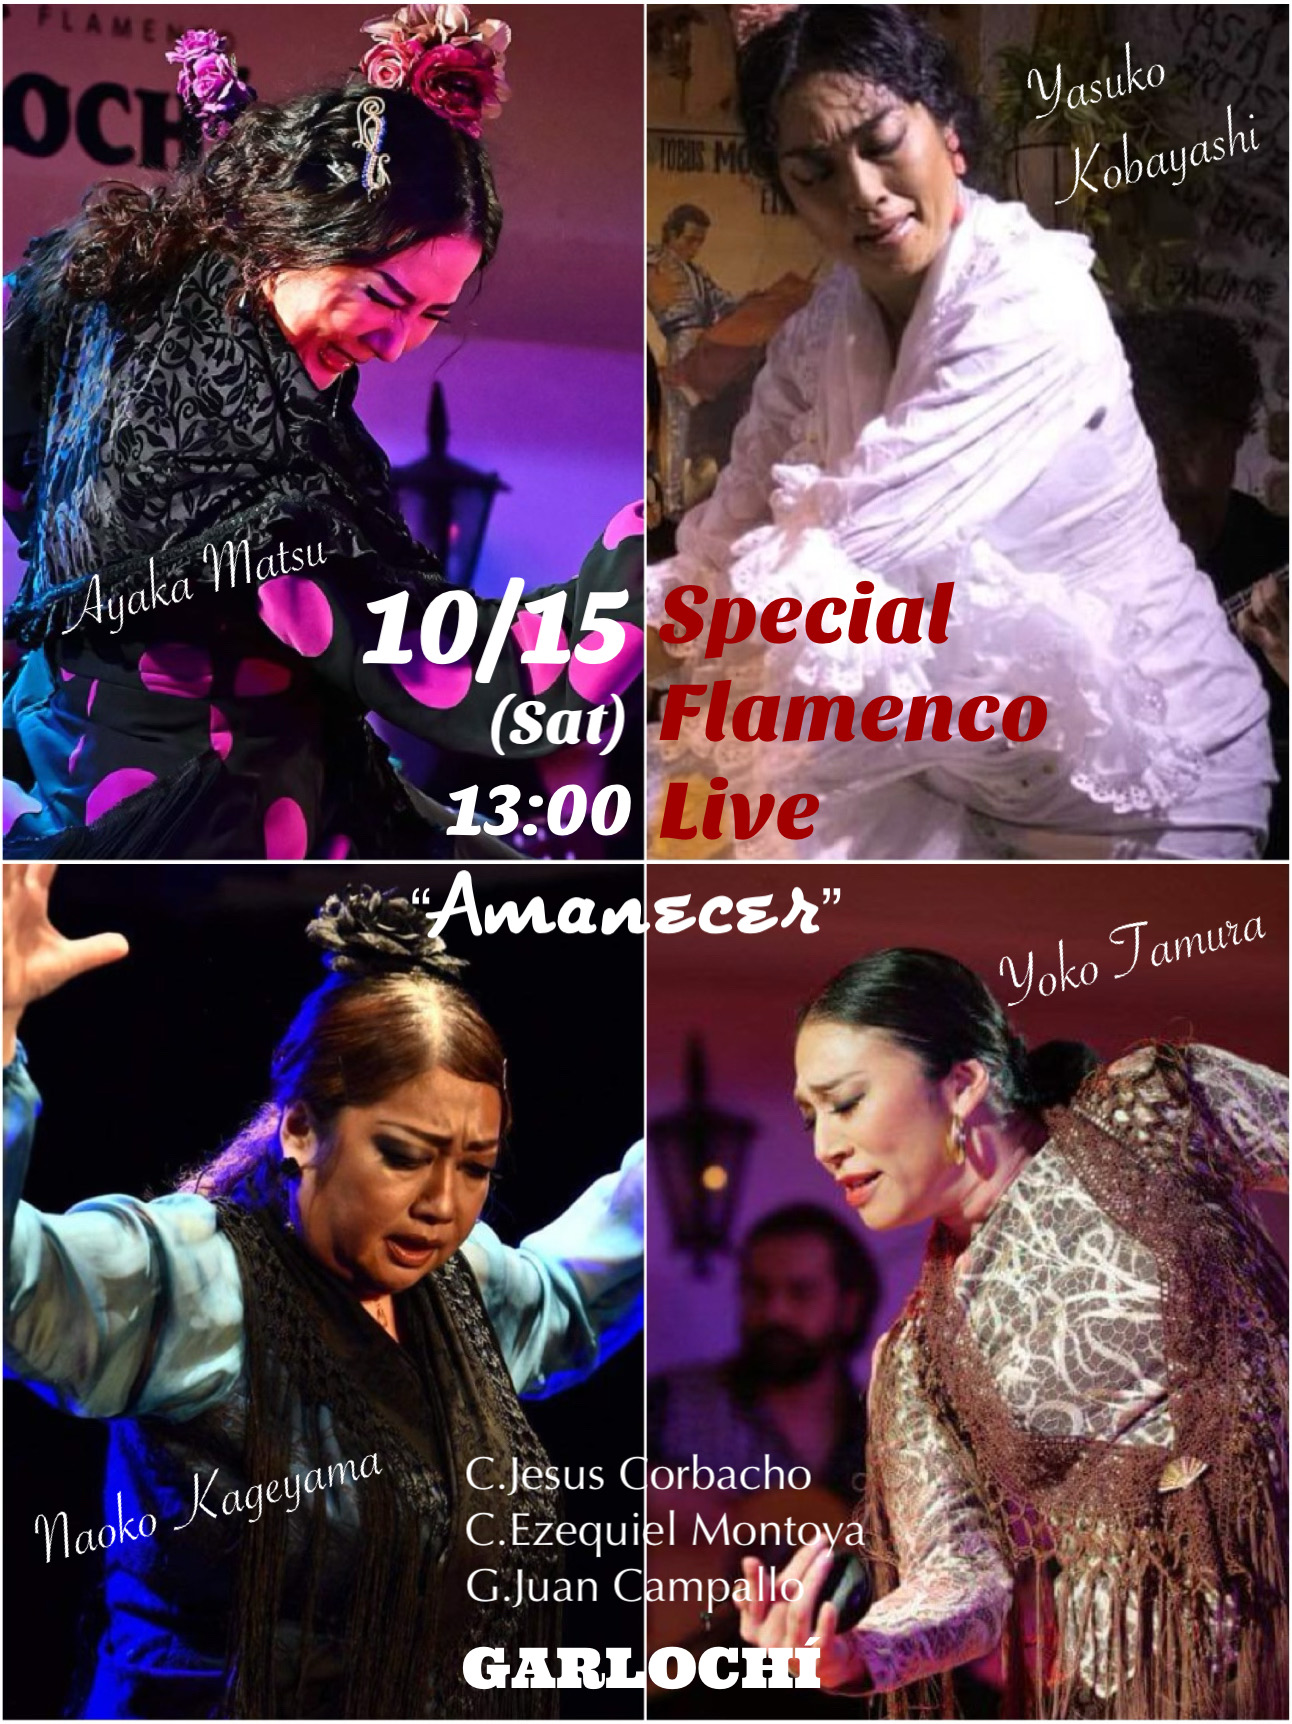 Special Flamenco Live “Amanecer”